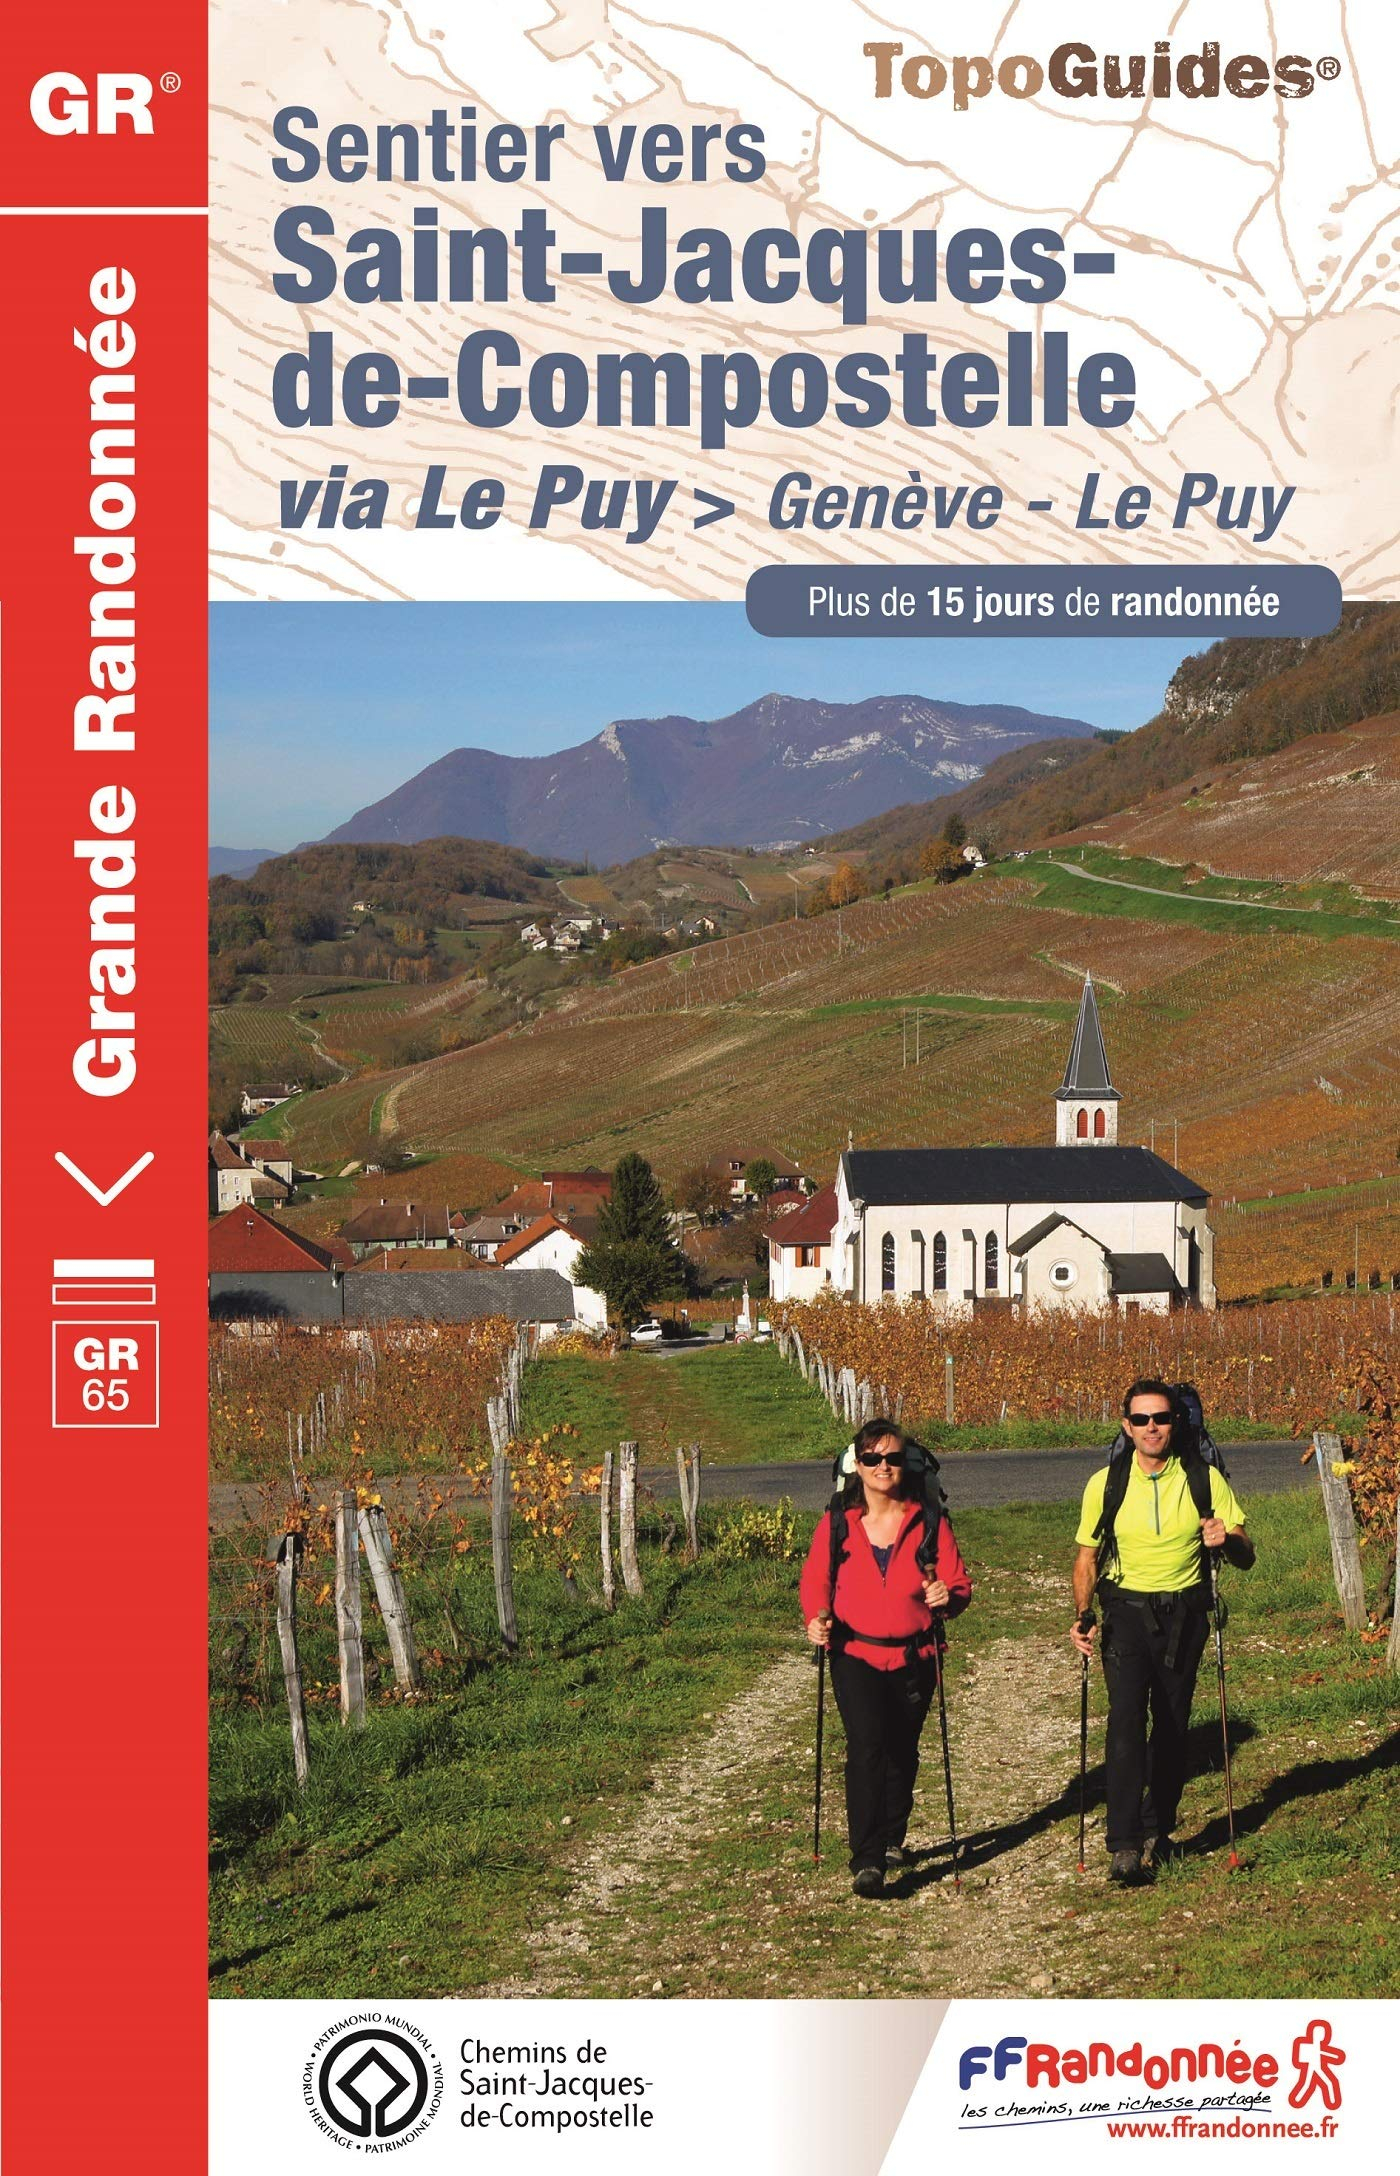 Sentier vers Saint-Jacques-de-Compostelle. Via Le Puy : Genève-Le Puy : plus de 15 jours de randonné